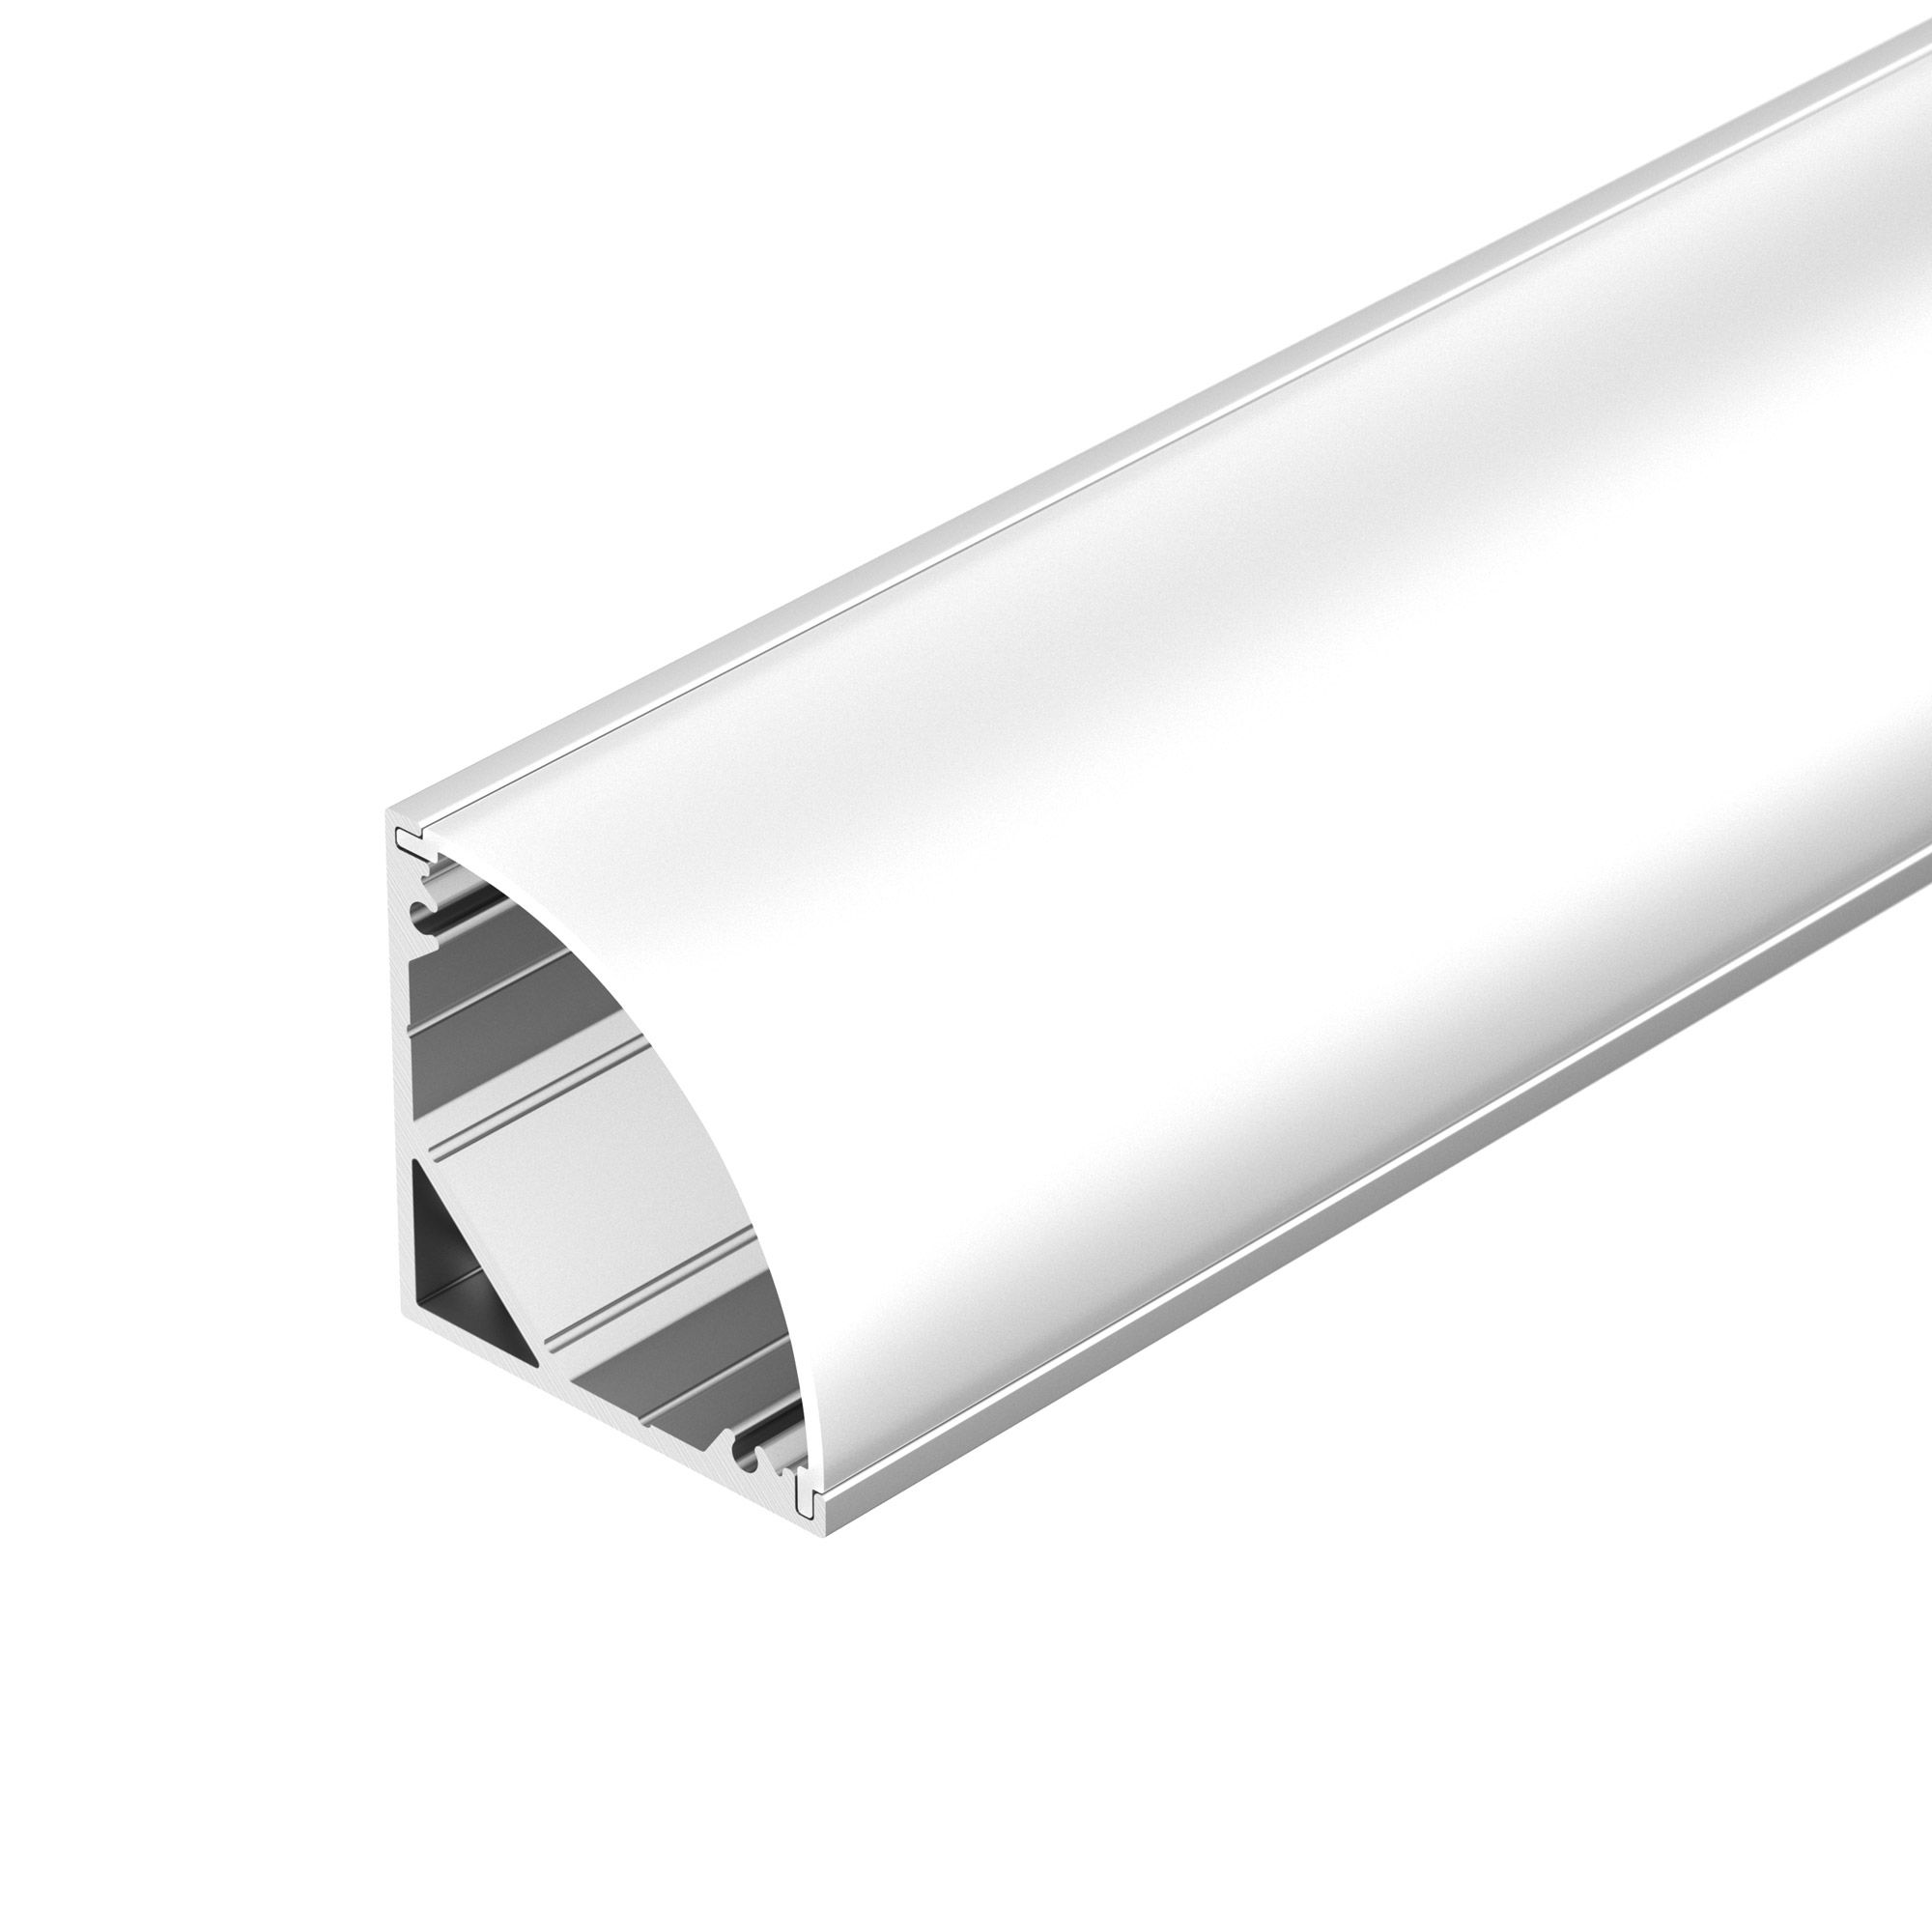 Профиль SL-KANT-H30-3000 ANOD (Arlight, Алюминий) l профиль с равными сторонами 15x15x1x2700 мм алюминий серебро